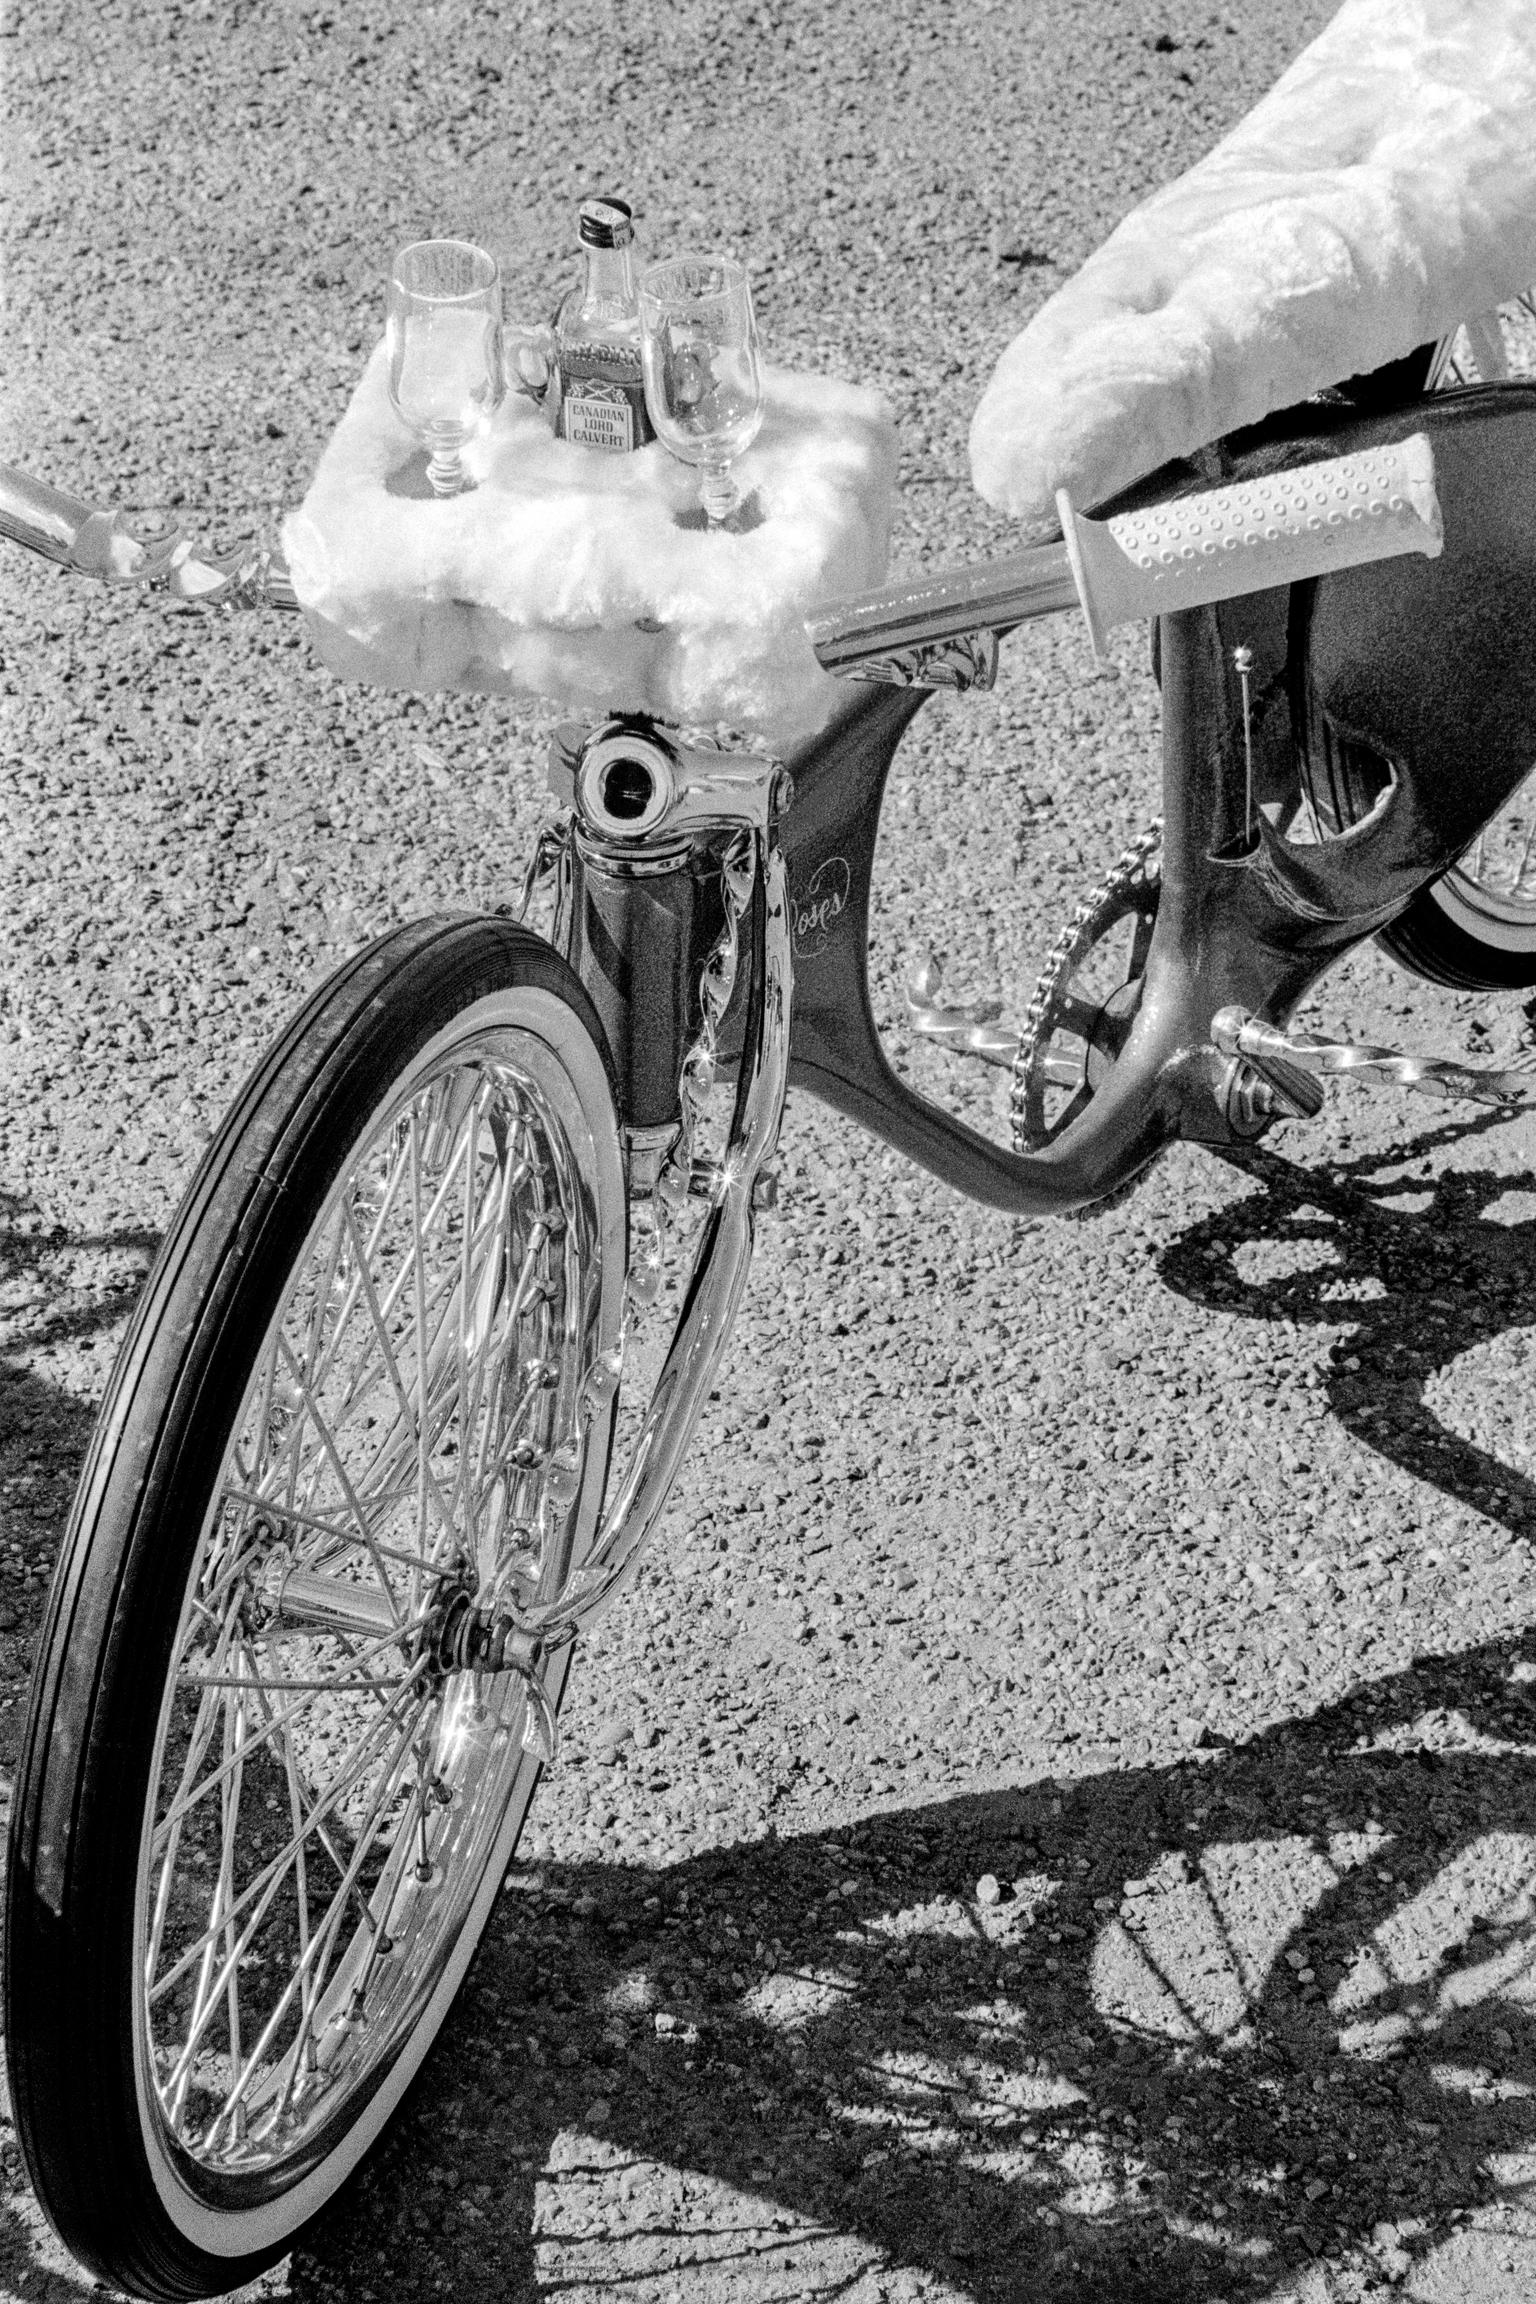 Low-riders meeting. Custom bike. Phoenix, Arizona USA